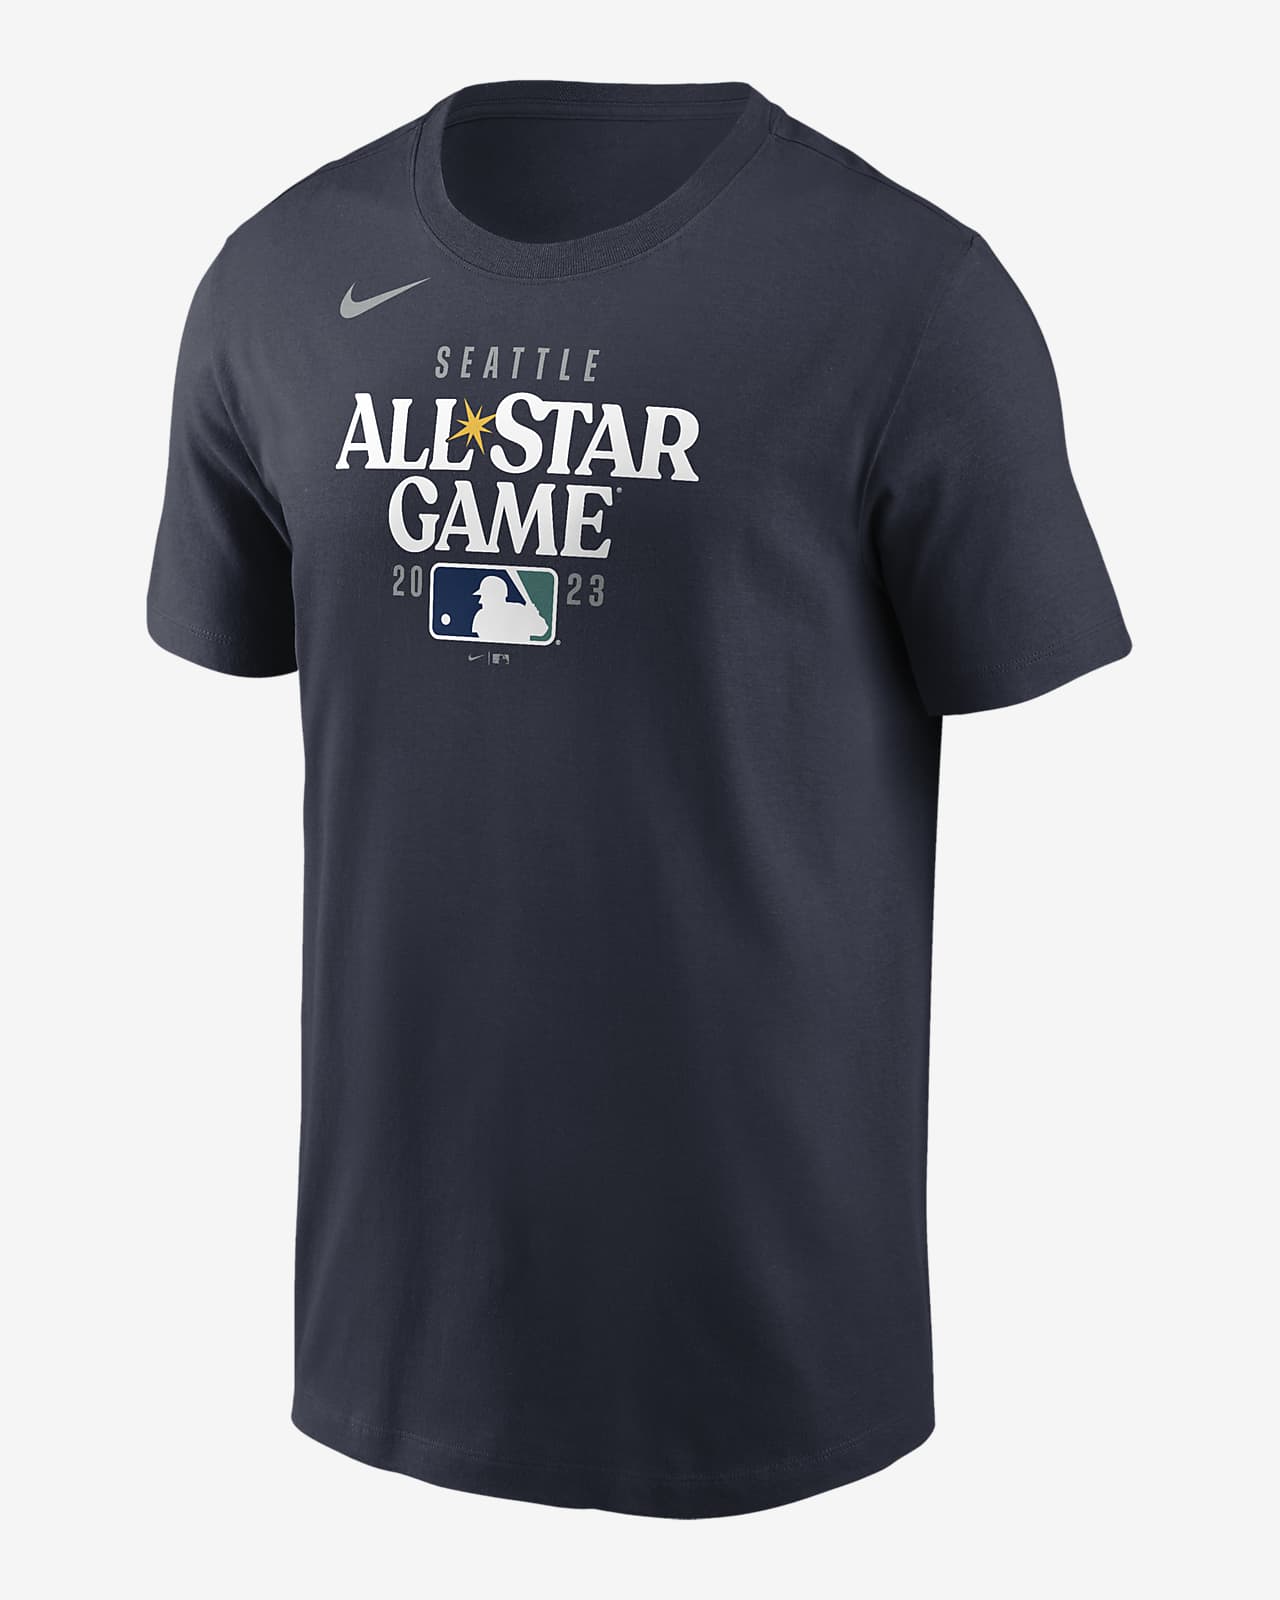 Chia sẻ với hơn 59 về MLB all star shirt mới nhất